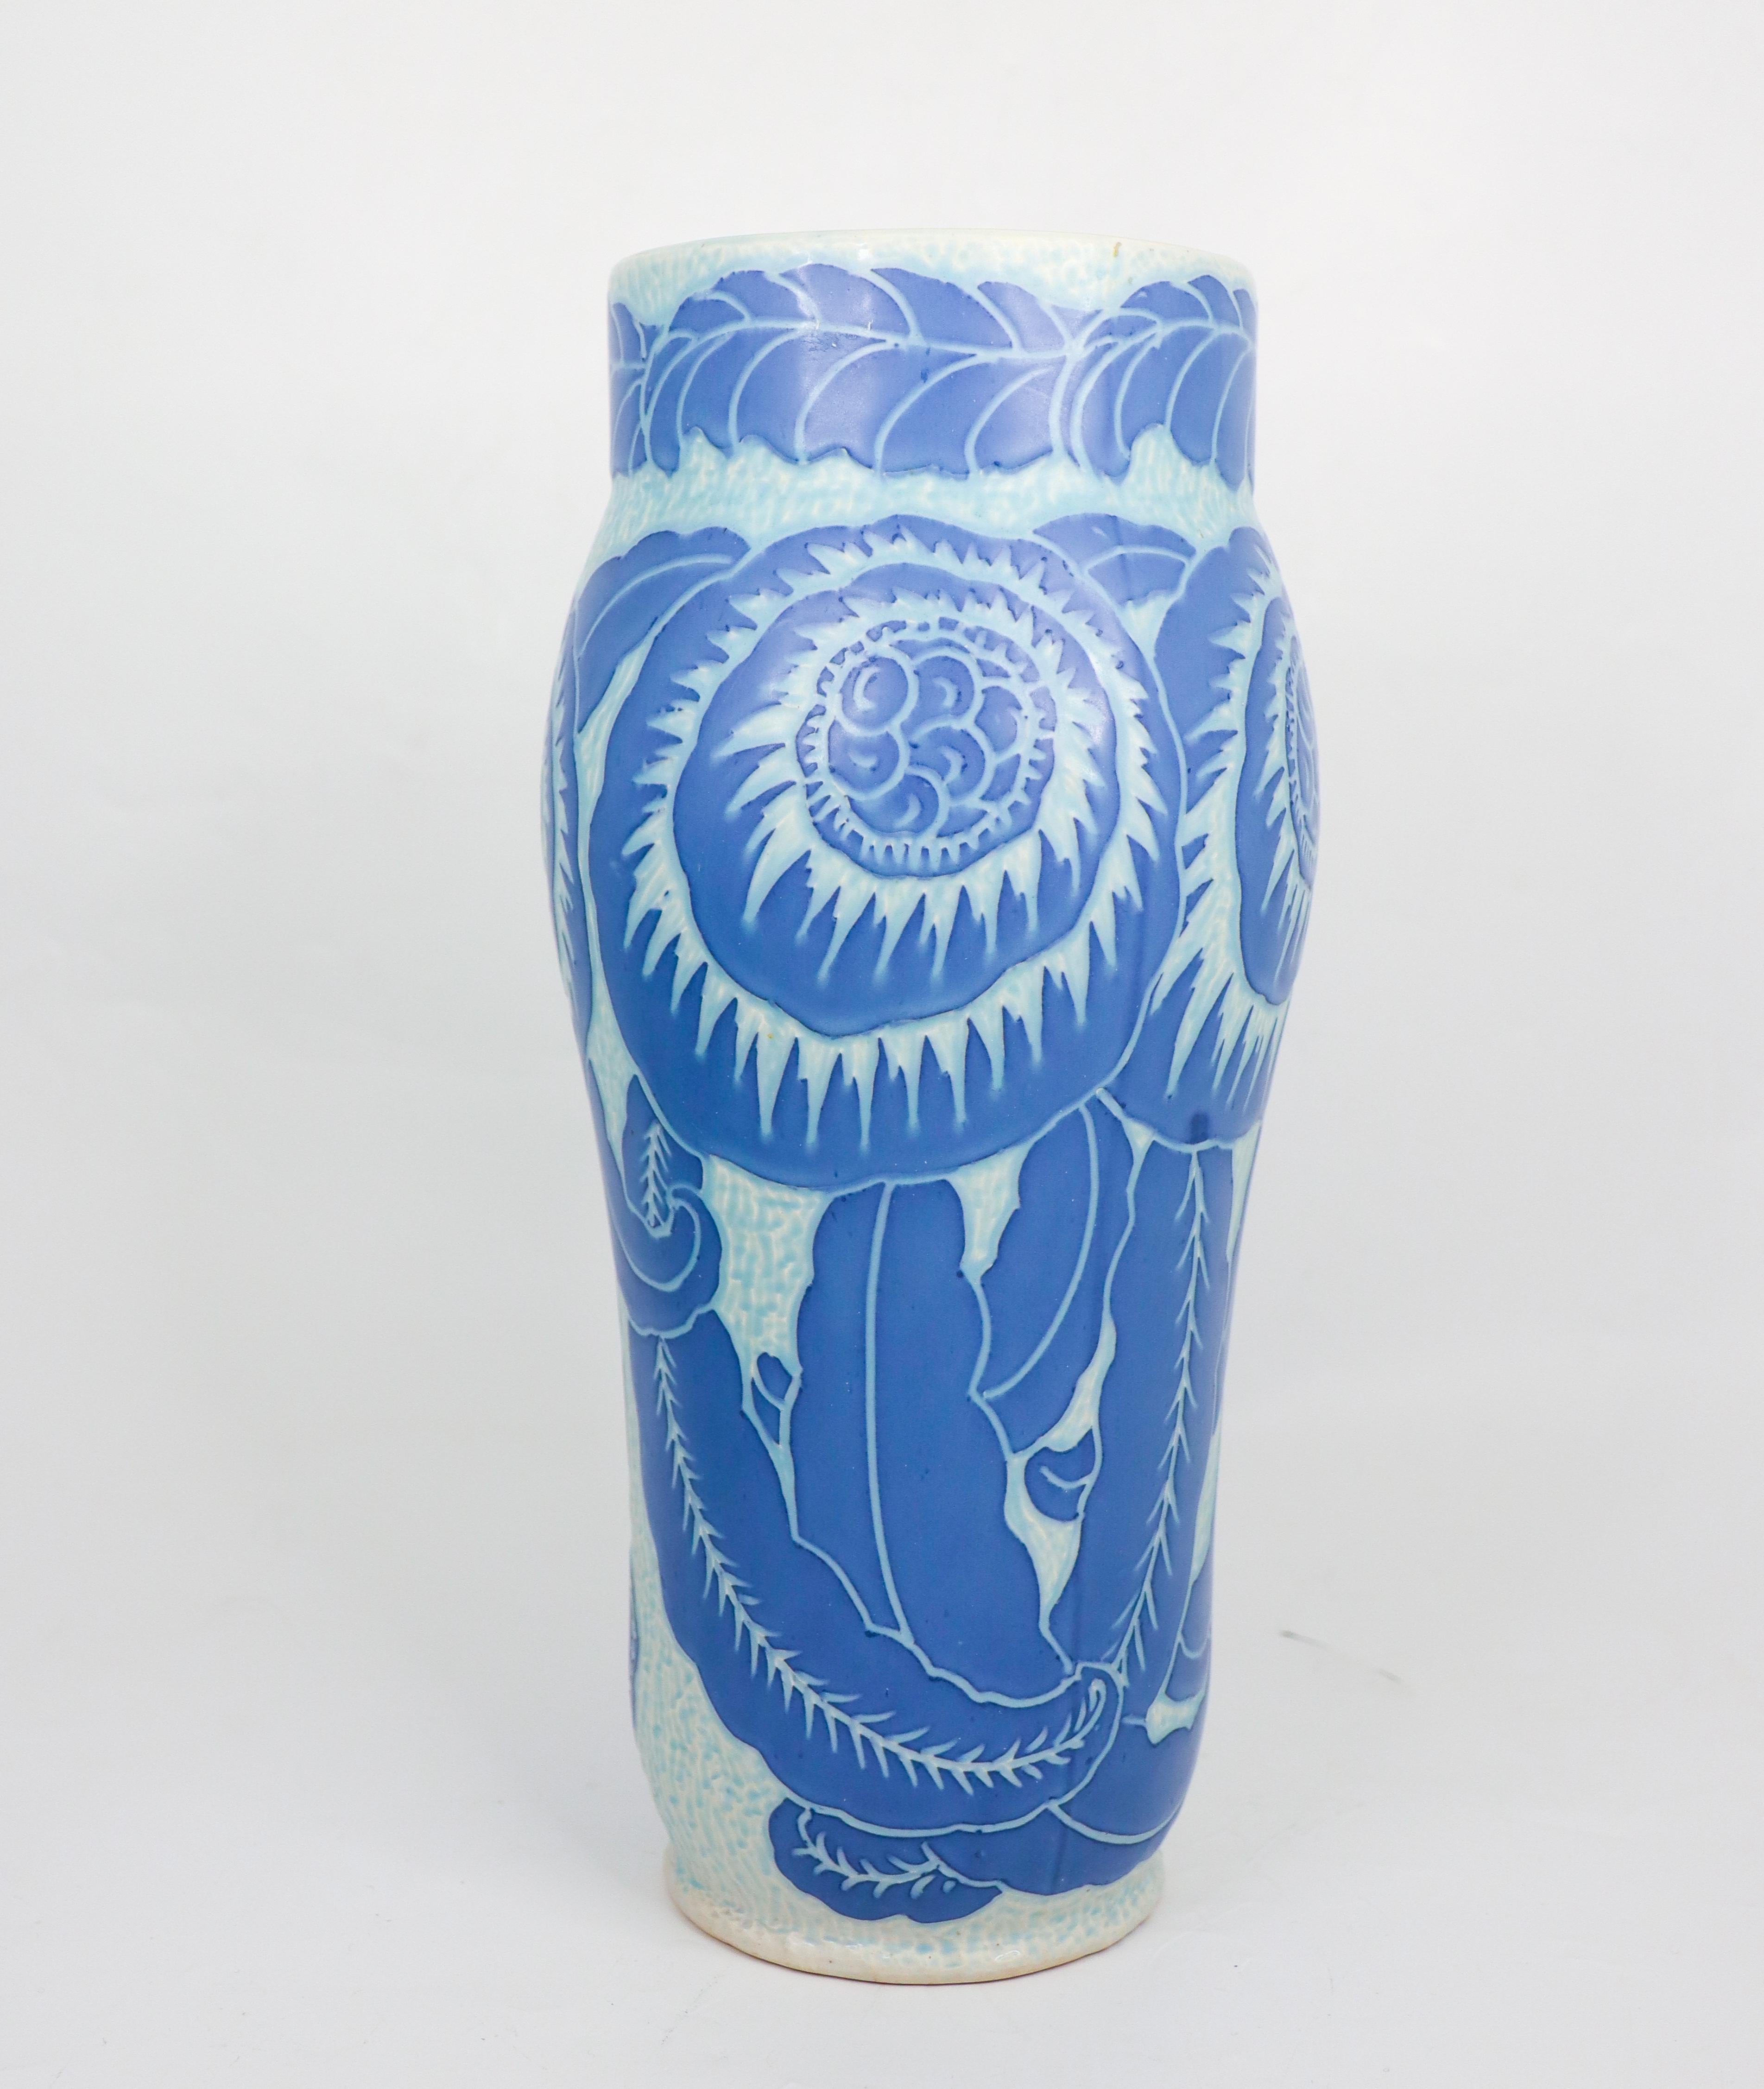 Diese Jugendstilvase aus Keramik wurde 1918 von Josef Ekberg bei Gustavsberg entworfen und stammt aus der klassischen Sgrafitto-Serie. Die Vase ist 30,5 cm (12,2